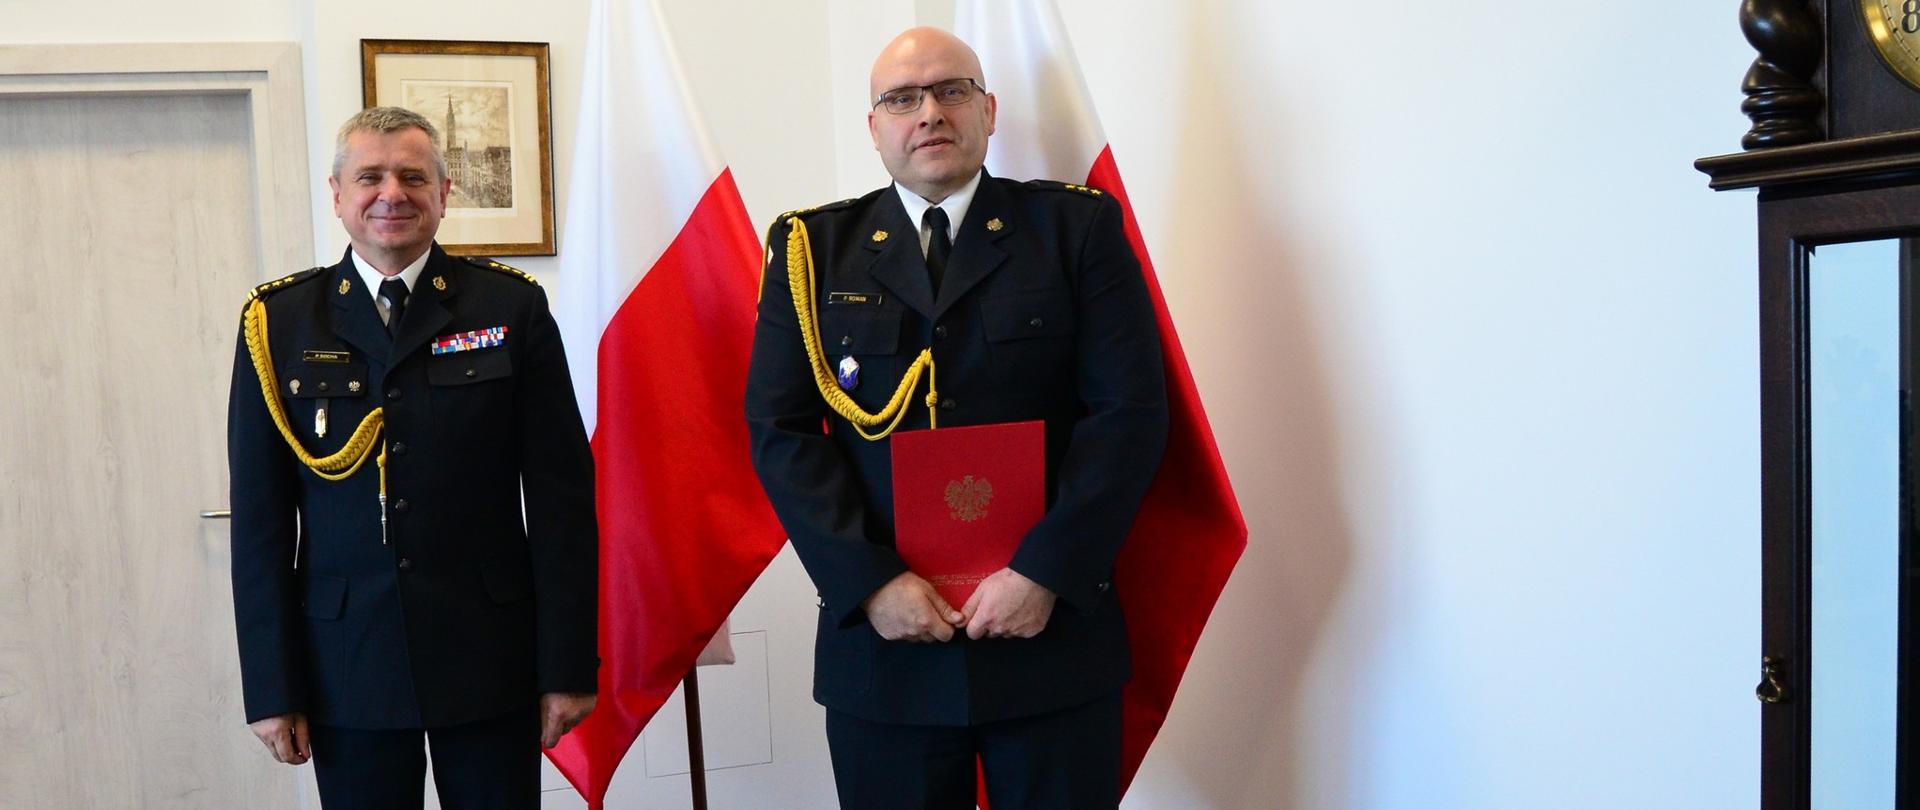 Pomorski komendant wojewódzki Państwowej Straży Pożarnej stoi z funkcjonariuszem trzymającym dokument, strażacy stoją na tle flagi Polski.